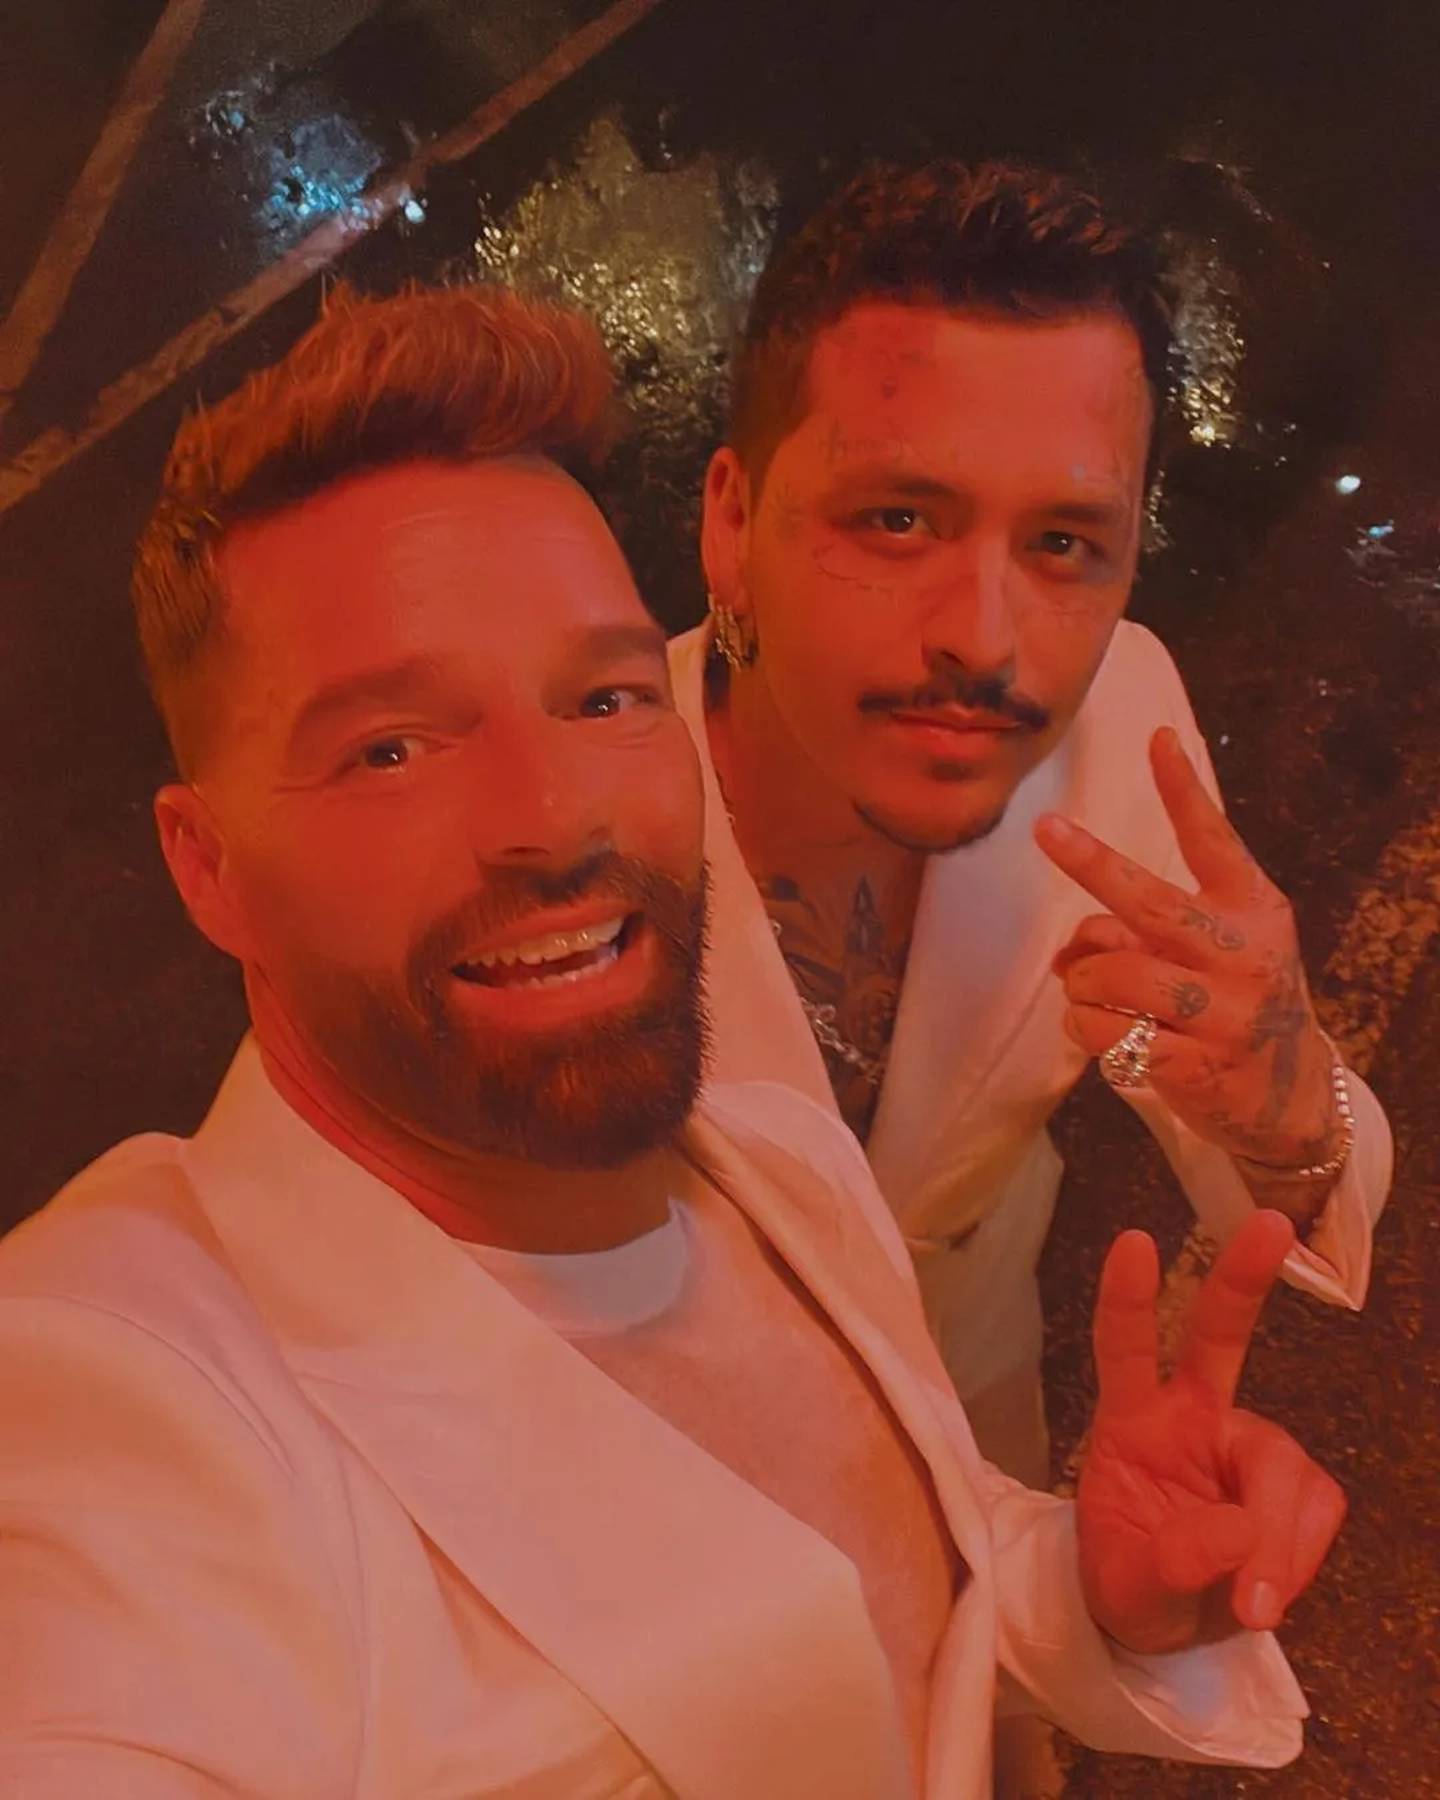 Ricky Martin compartió en su cuenta de Instagram que trabaja junto a Christian Nodal. Ninguno de los dos brindó detalles de la colaboración